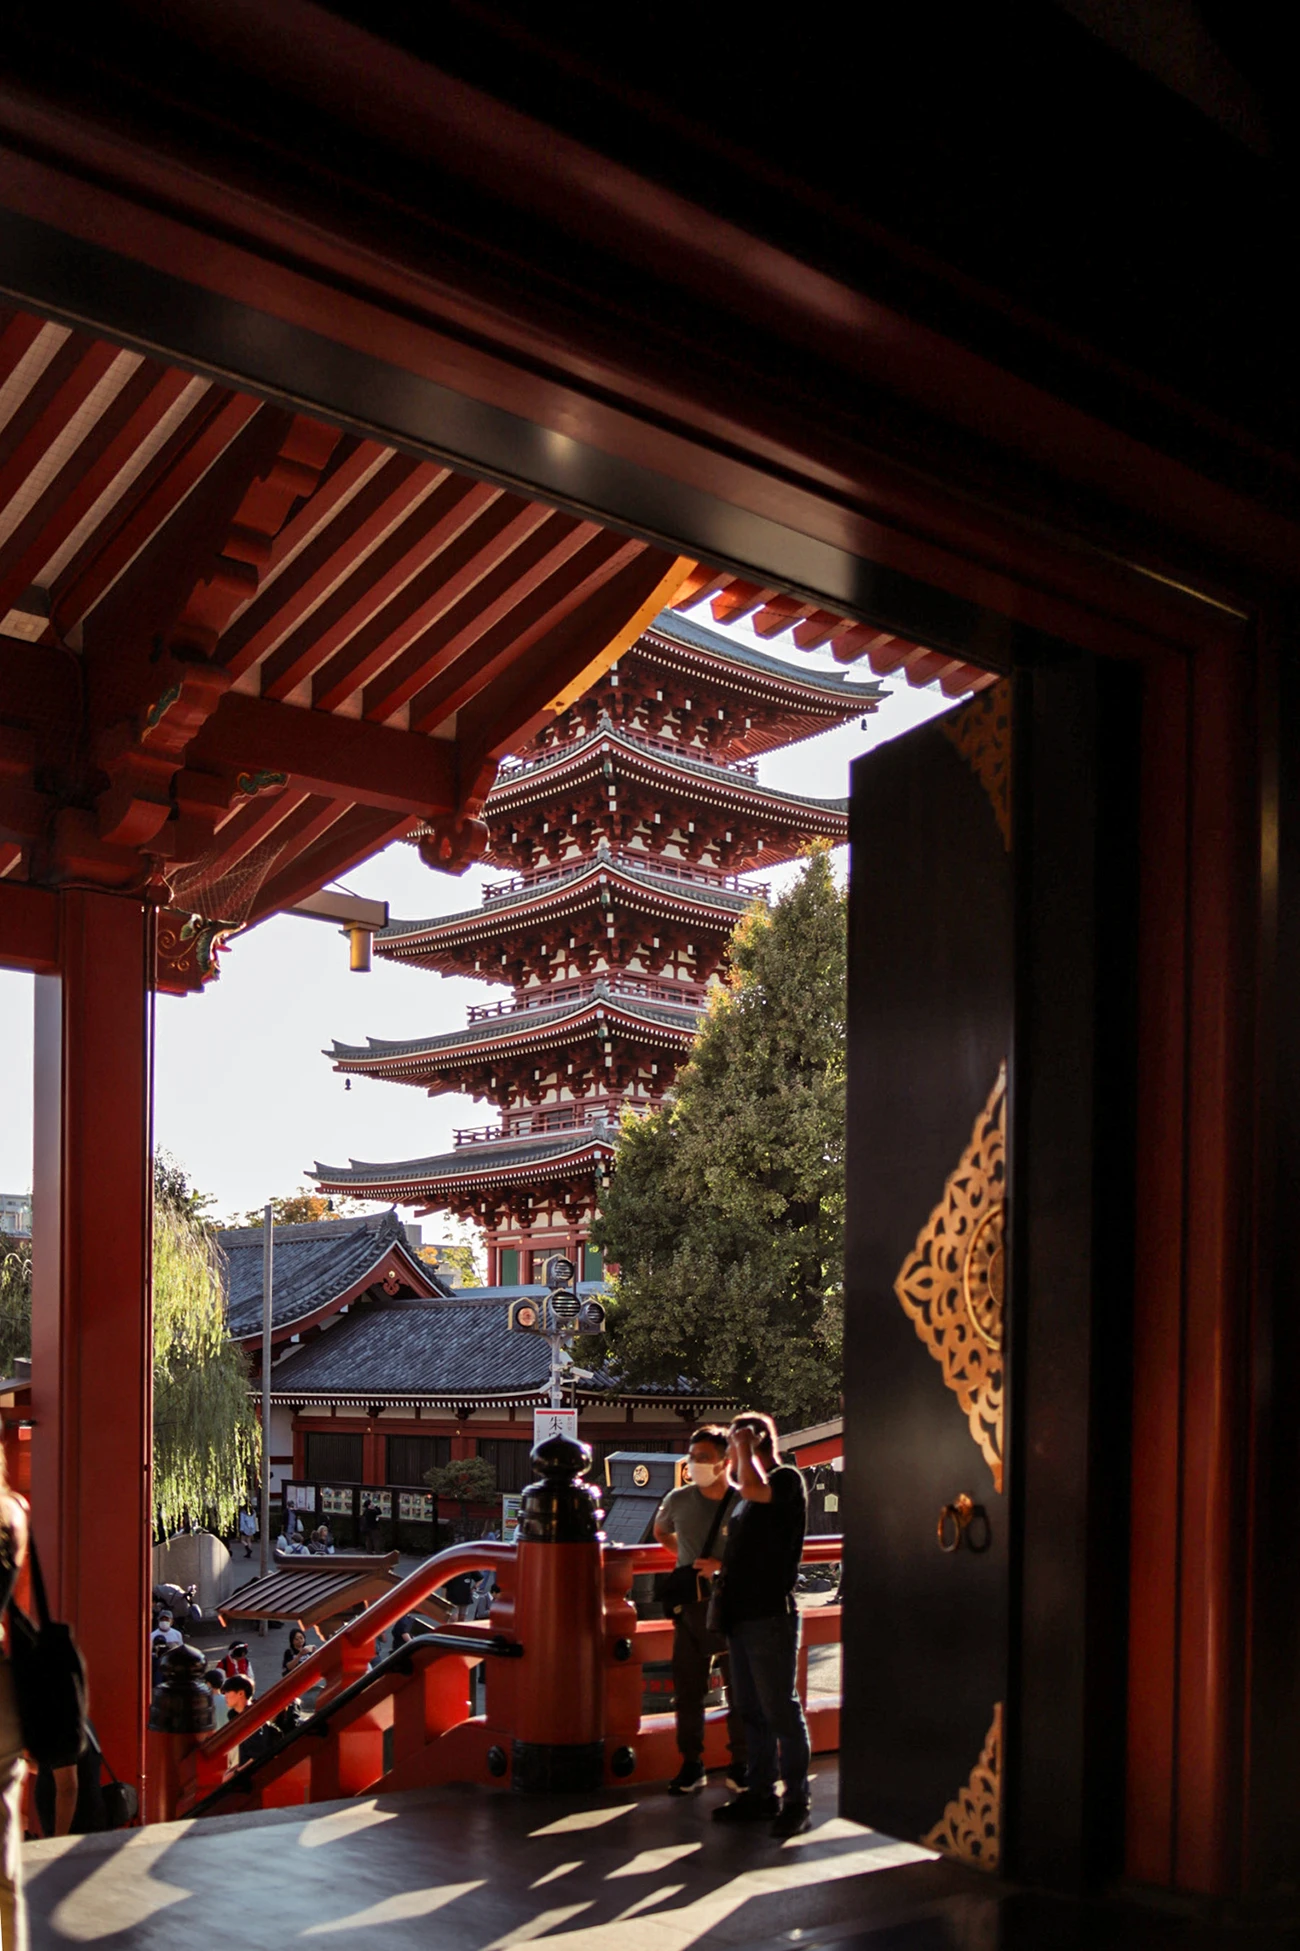 Japan - Asakusa Schrein - My Travel Island - Pagode; Der Asakusa Schrein, der Sensō-ji Tempel und die wunderschöne Pagode gehören zu den Top Sehenswürdigkeiten von Tokio.